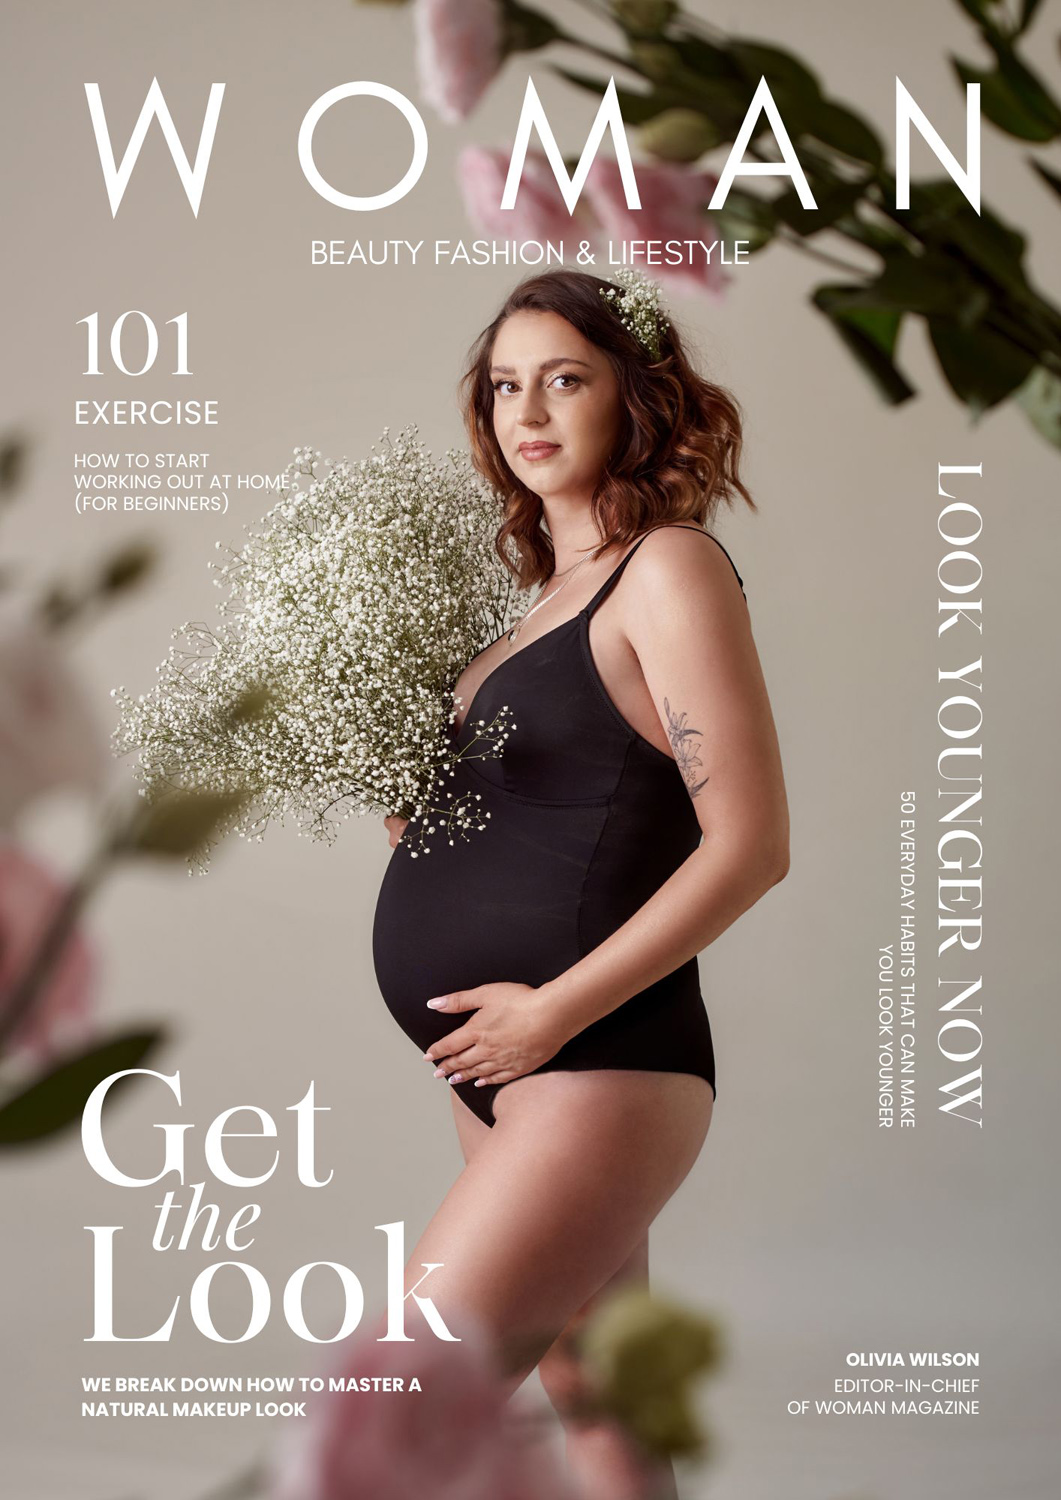 okładka magazynu, efekt sesji ciążowej wykonanej we Fleszka Studio Fotogaficznym w Częstochowie, przez fotografa. Sesja zdjęciowa w kwiatach.